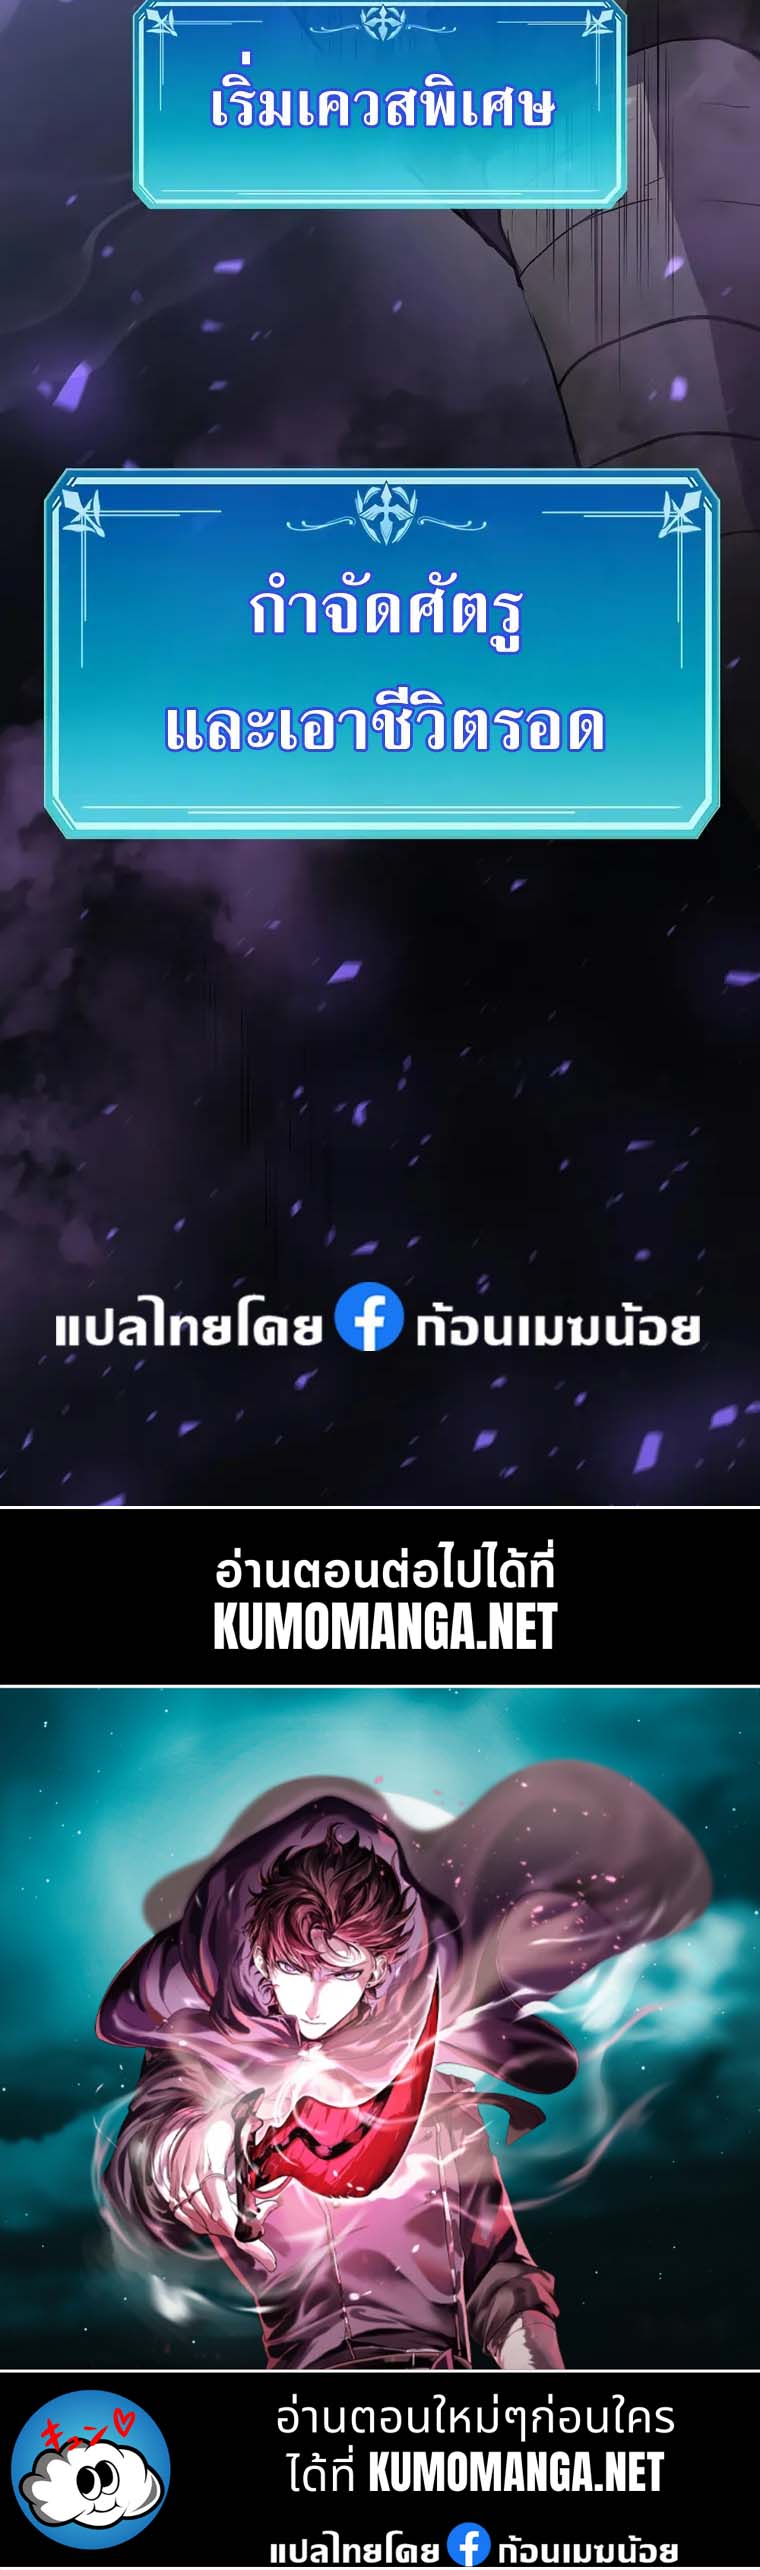 kumomanga.net